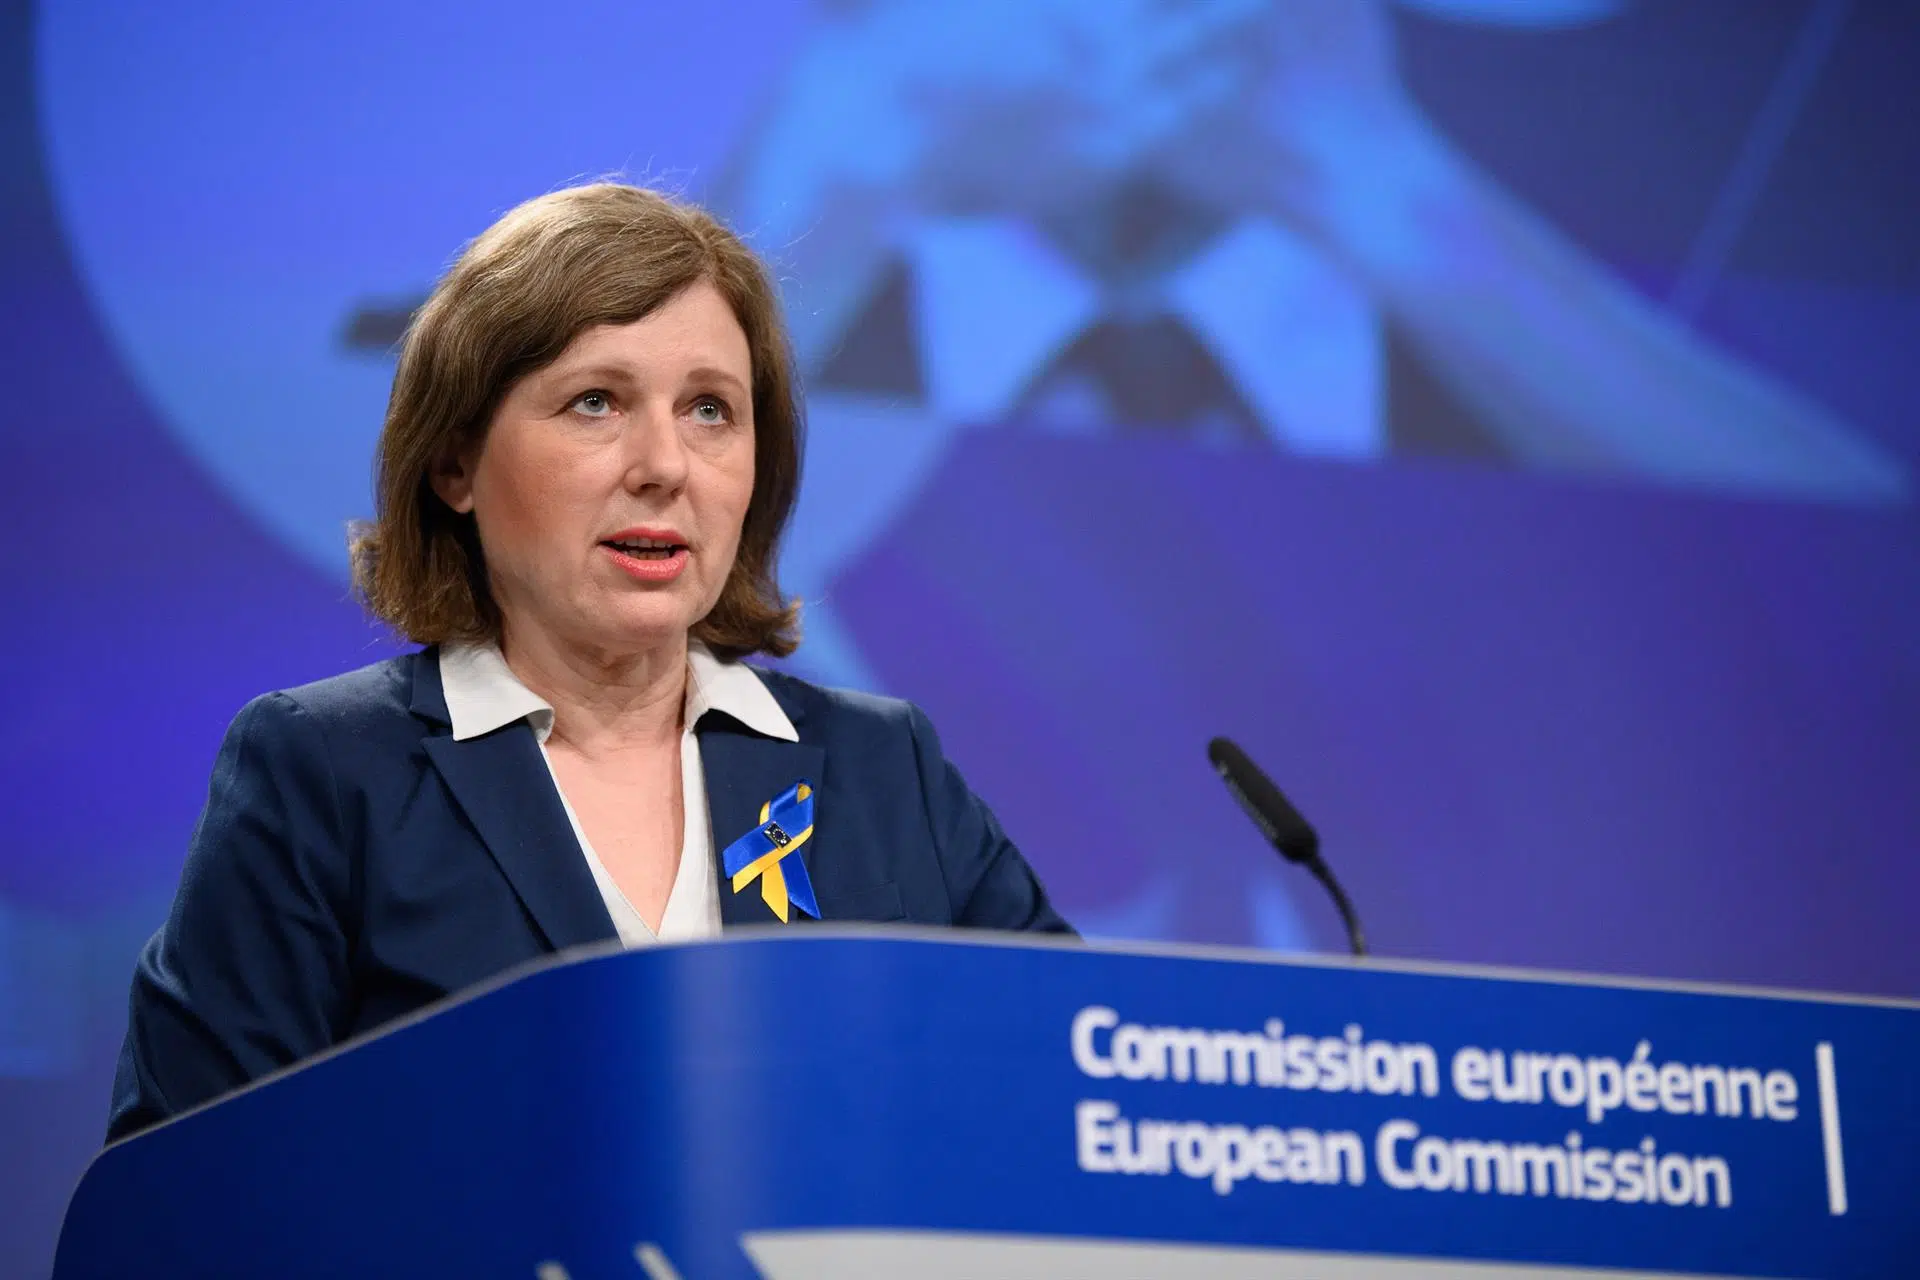 Bruselas examinará si la ley de amnistía viola el Derecho UE pero insiste en que compete al TC decir si es constitucional